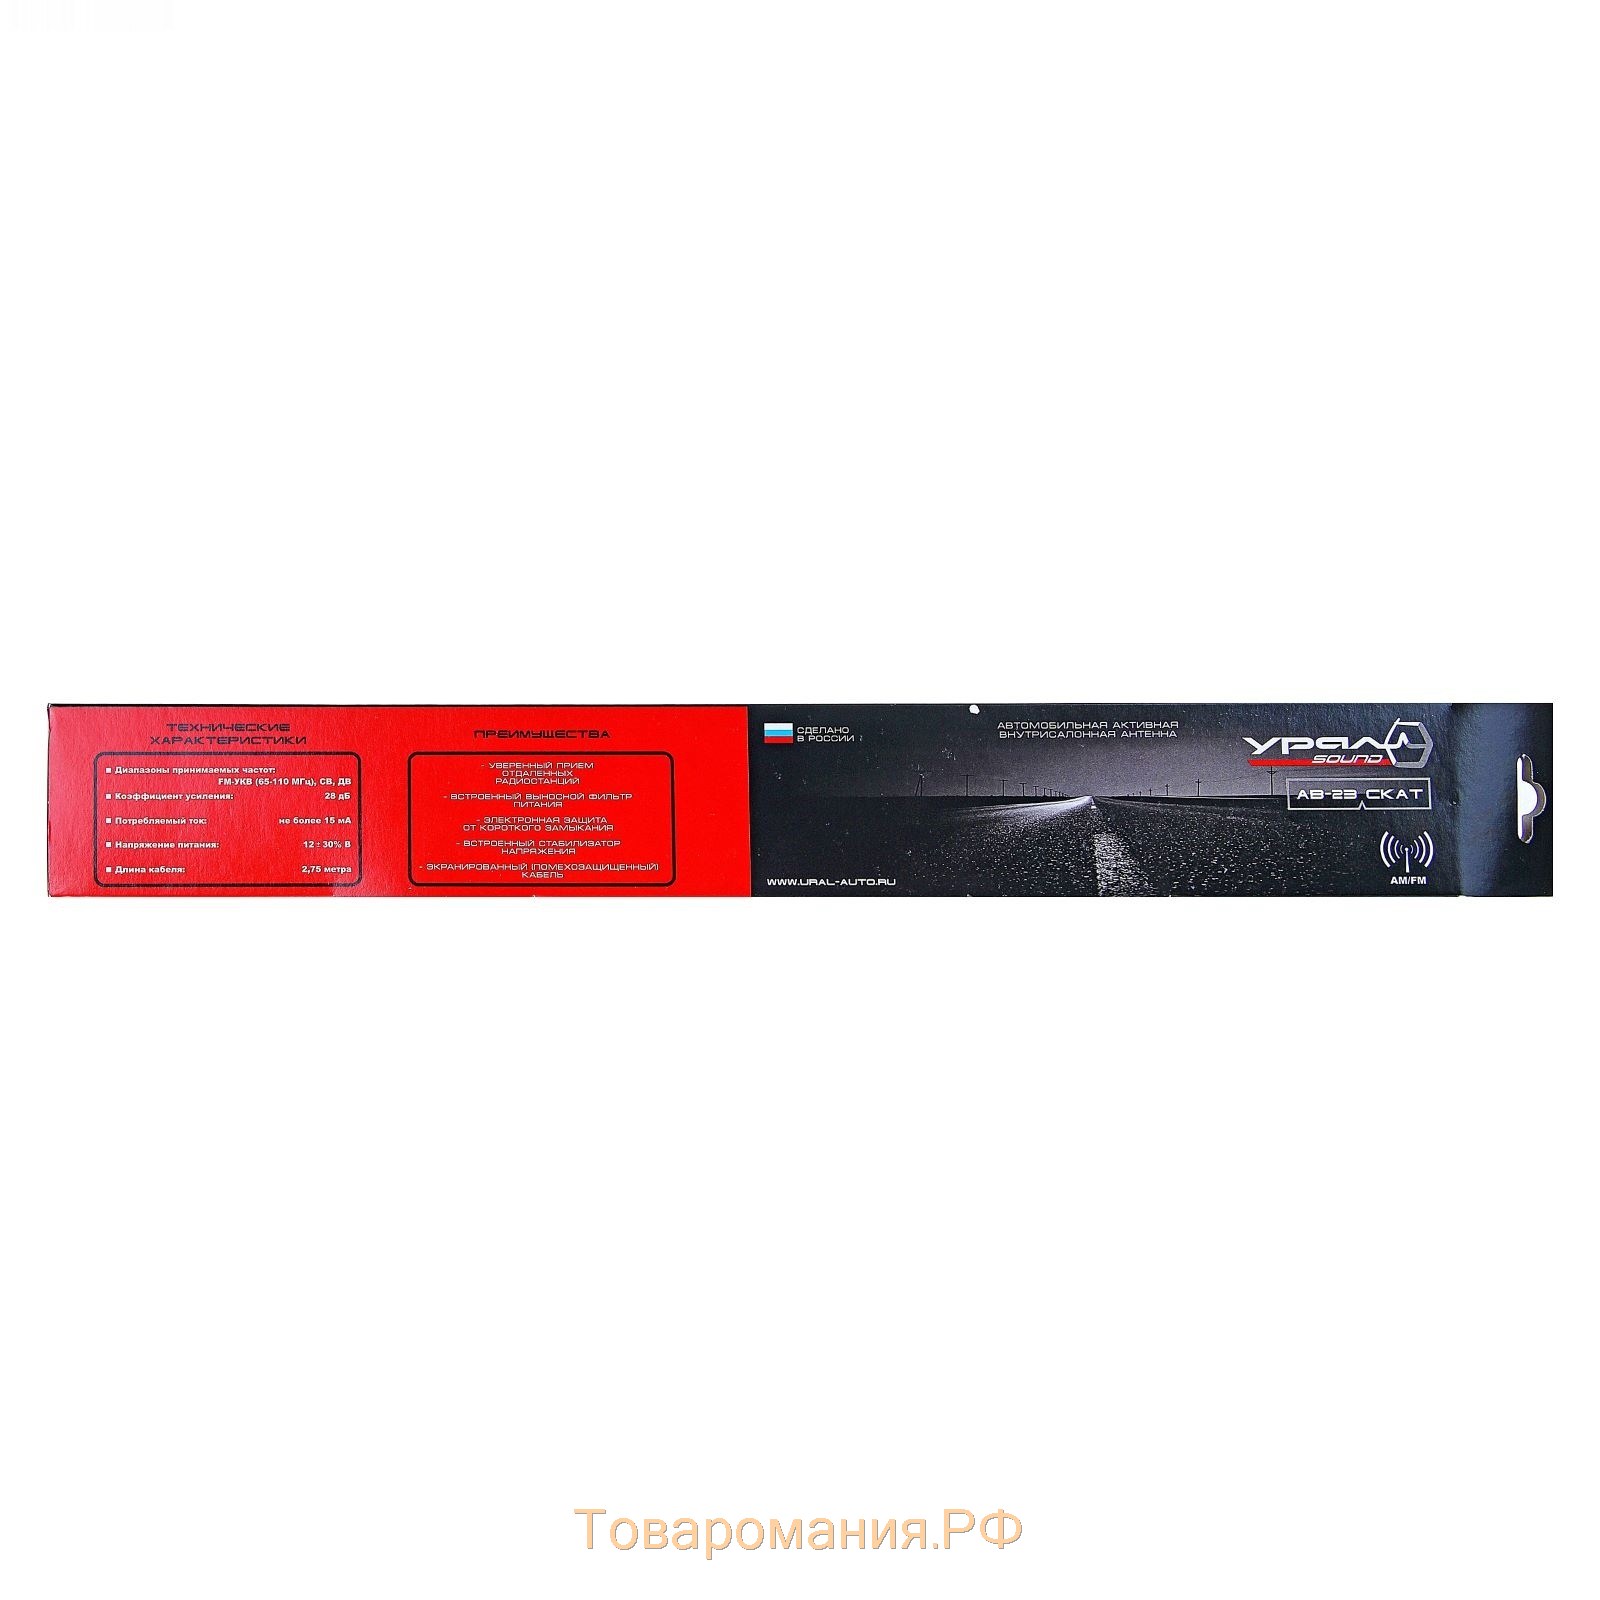 Антенна Ural AB-23 "Скат", FM-УКВ/СВ/ДВ, кабель 275 см